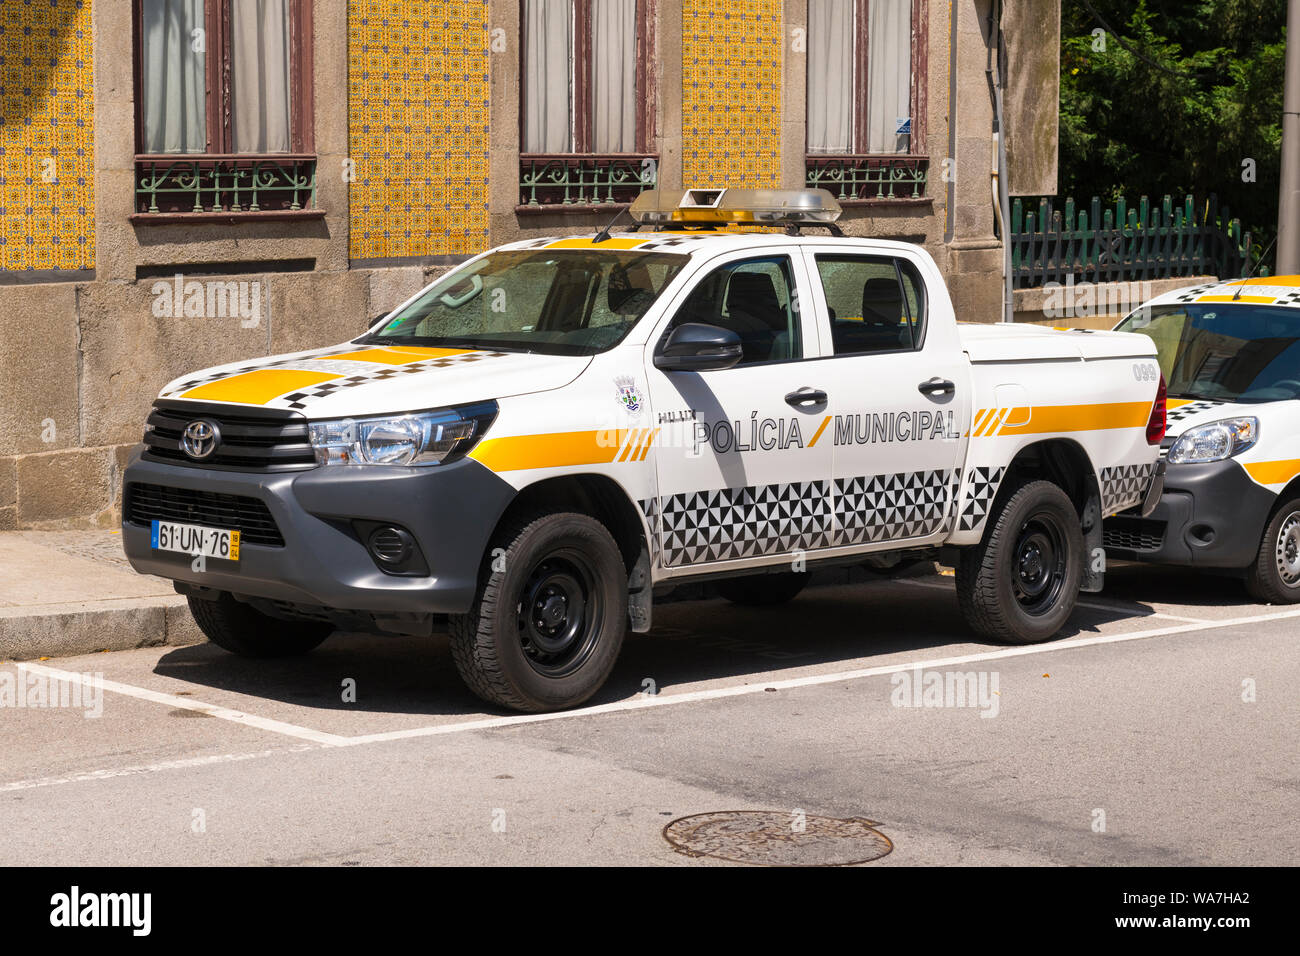 Portugal Vila Nova de Gaia Policia voiture Toyota Hilux 4x4 de la police municipale de police en stationnement trottoir chaussée scène de rue Banque D'Images